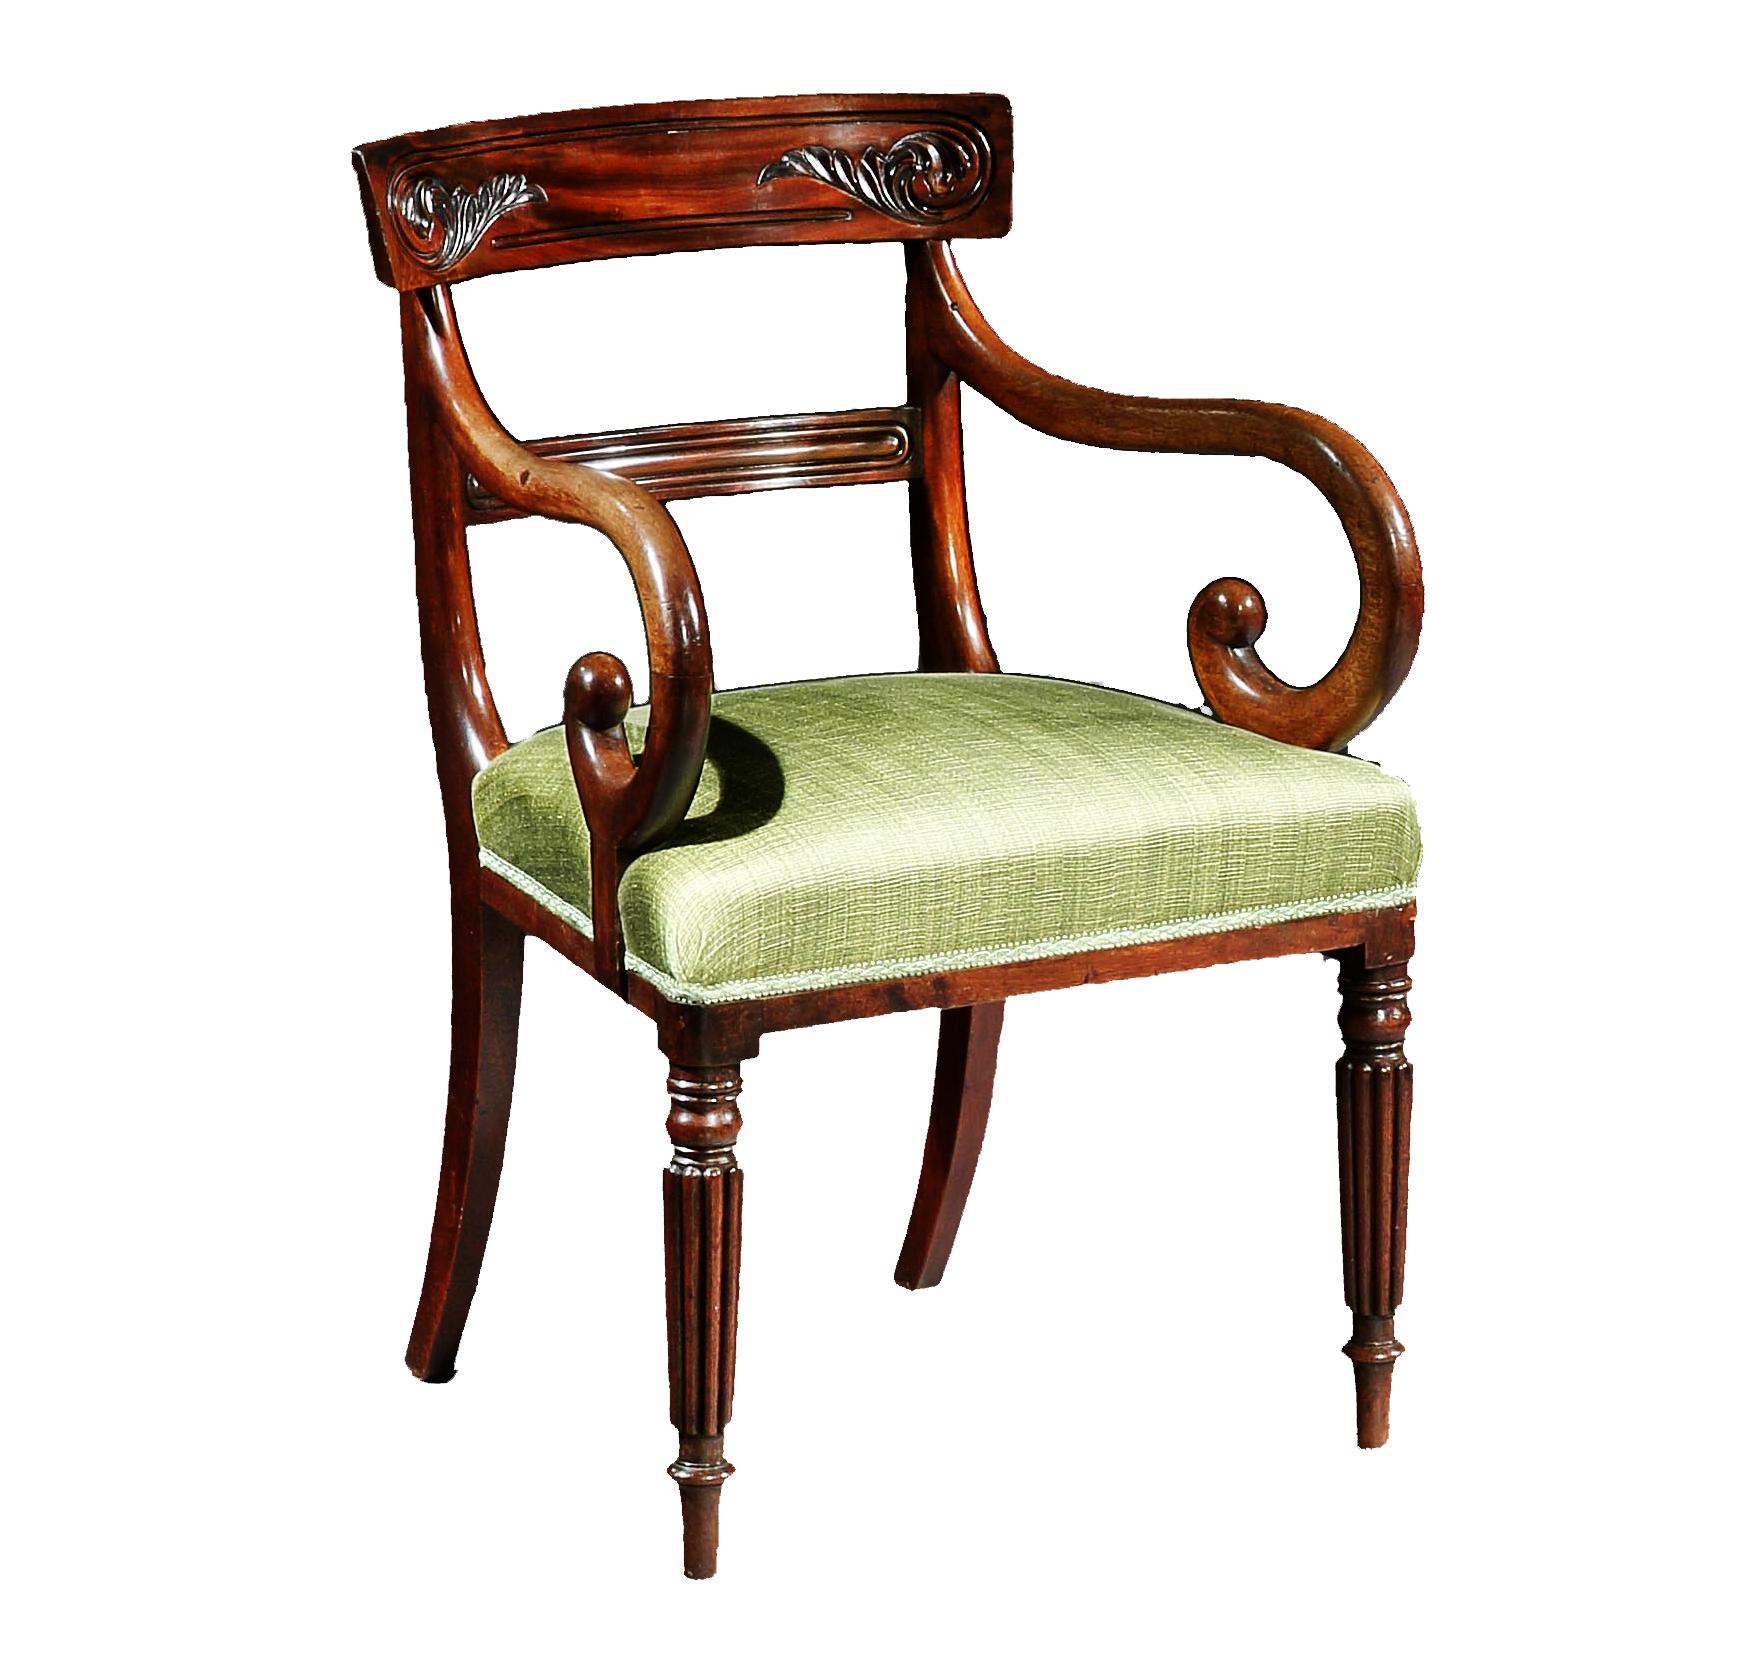 Une belle paire de chaises de sculpteur en acajou de style George IV. Les dossiers sculptés et façonnés, au-dessus d'une douille centrale cannelée, avec des sièges rembourrés, reposent sur des pieds cannelés tournés.